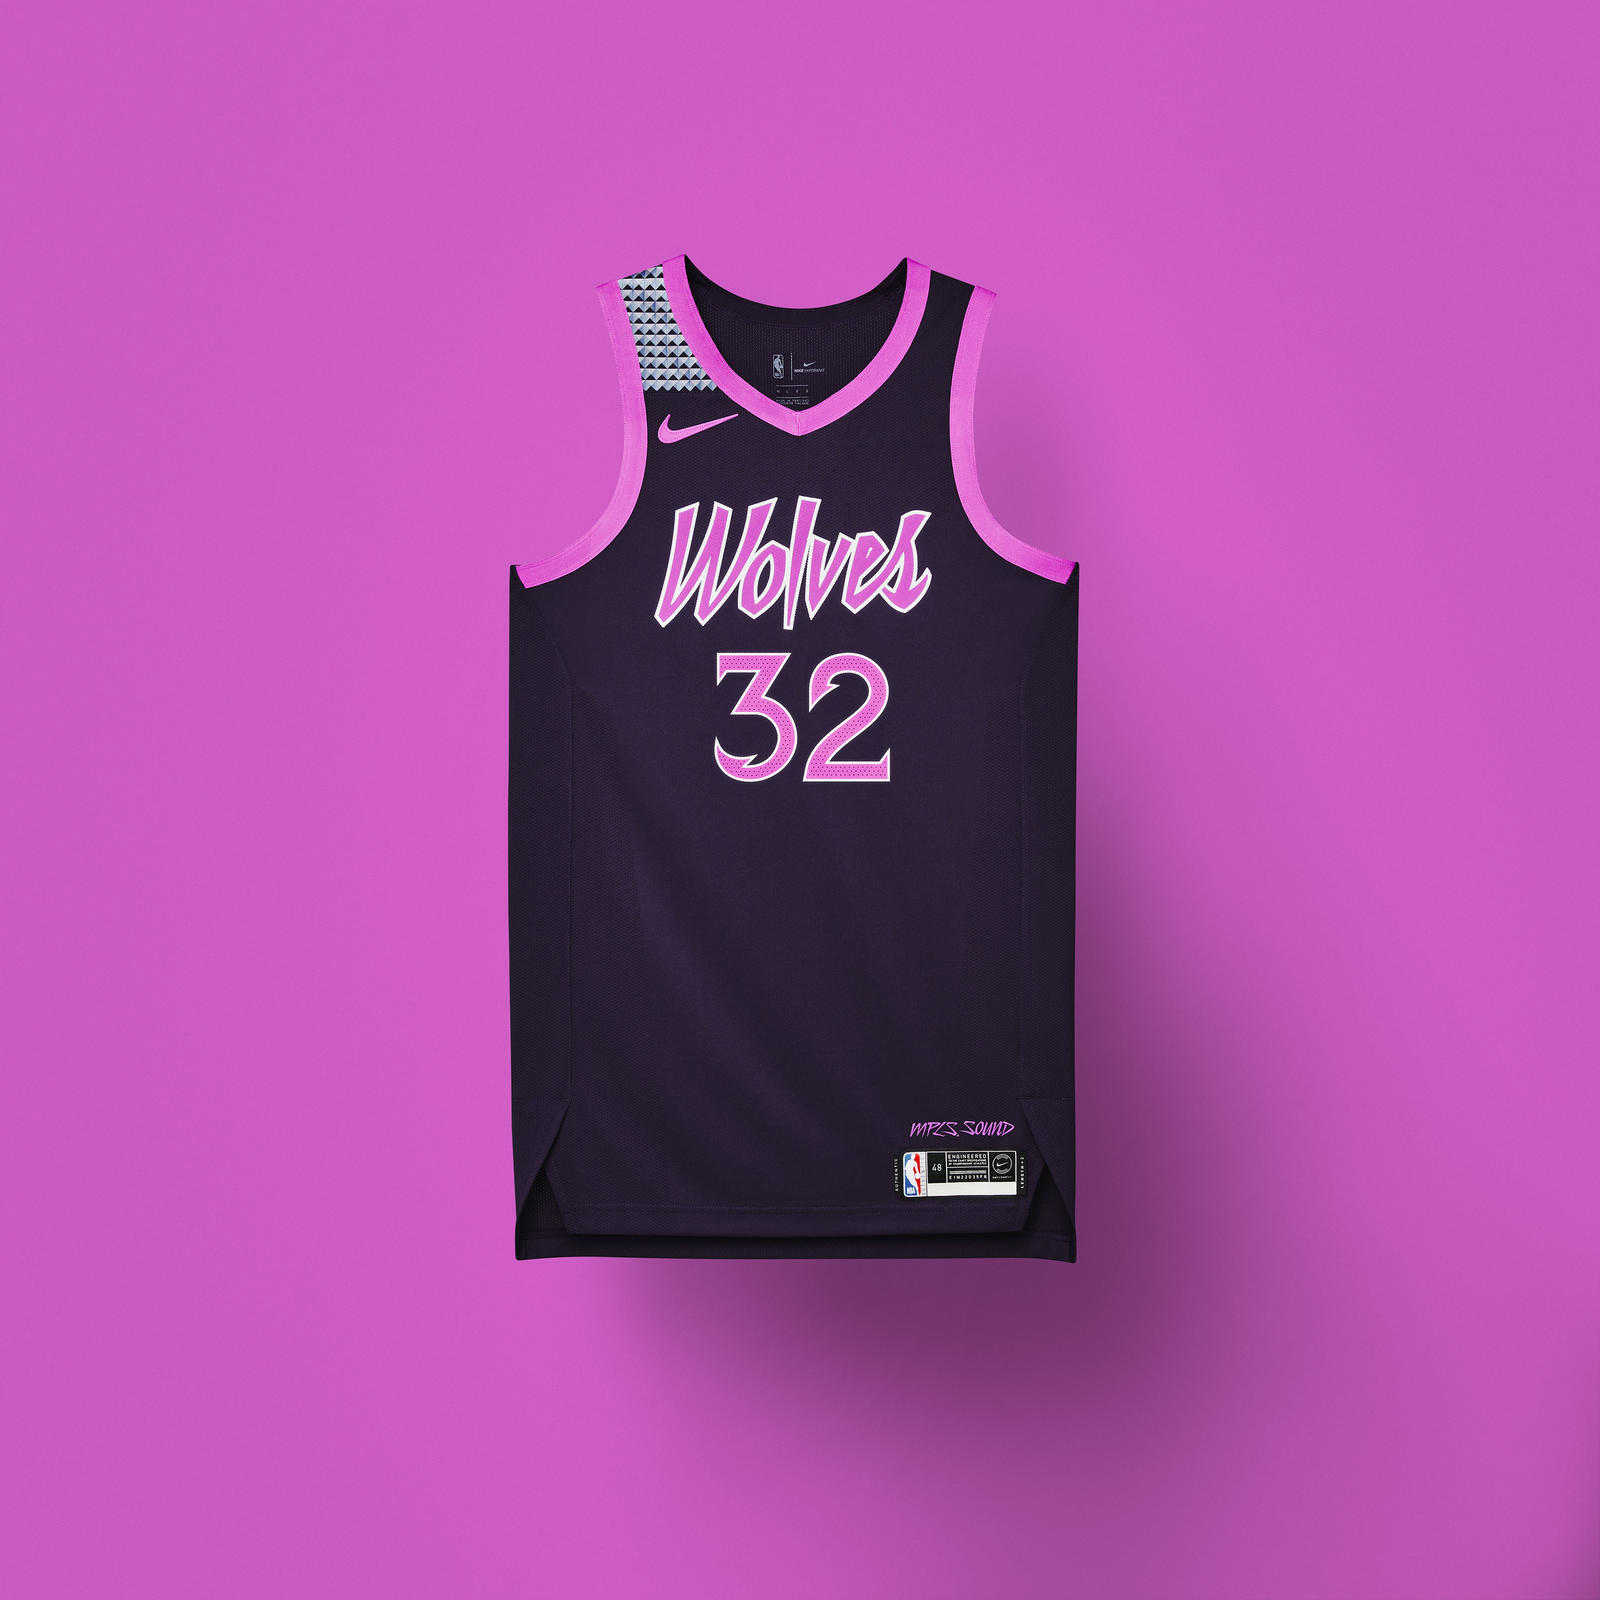 2018-19赛季NBA城市版球衣陆续登场